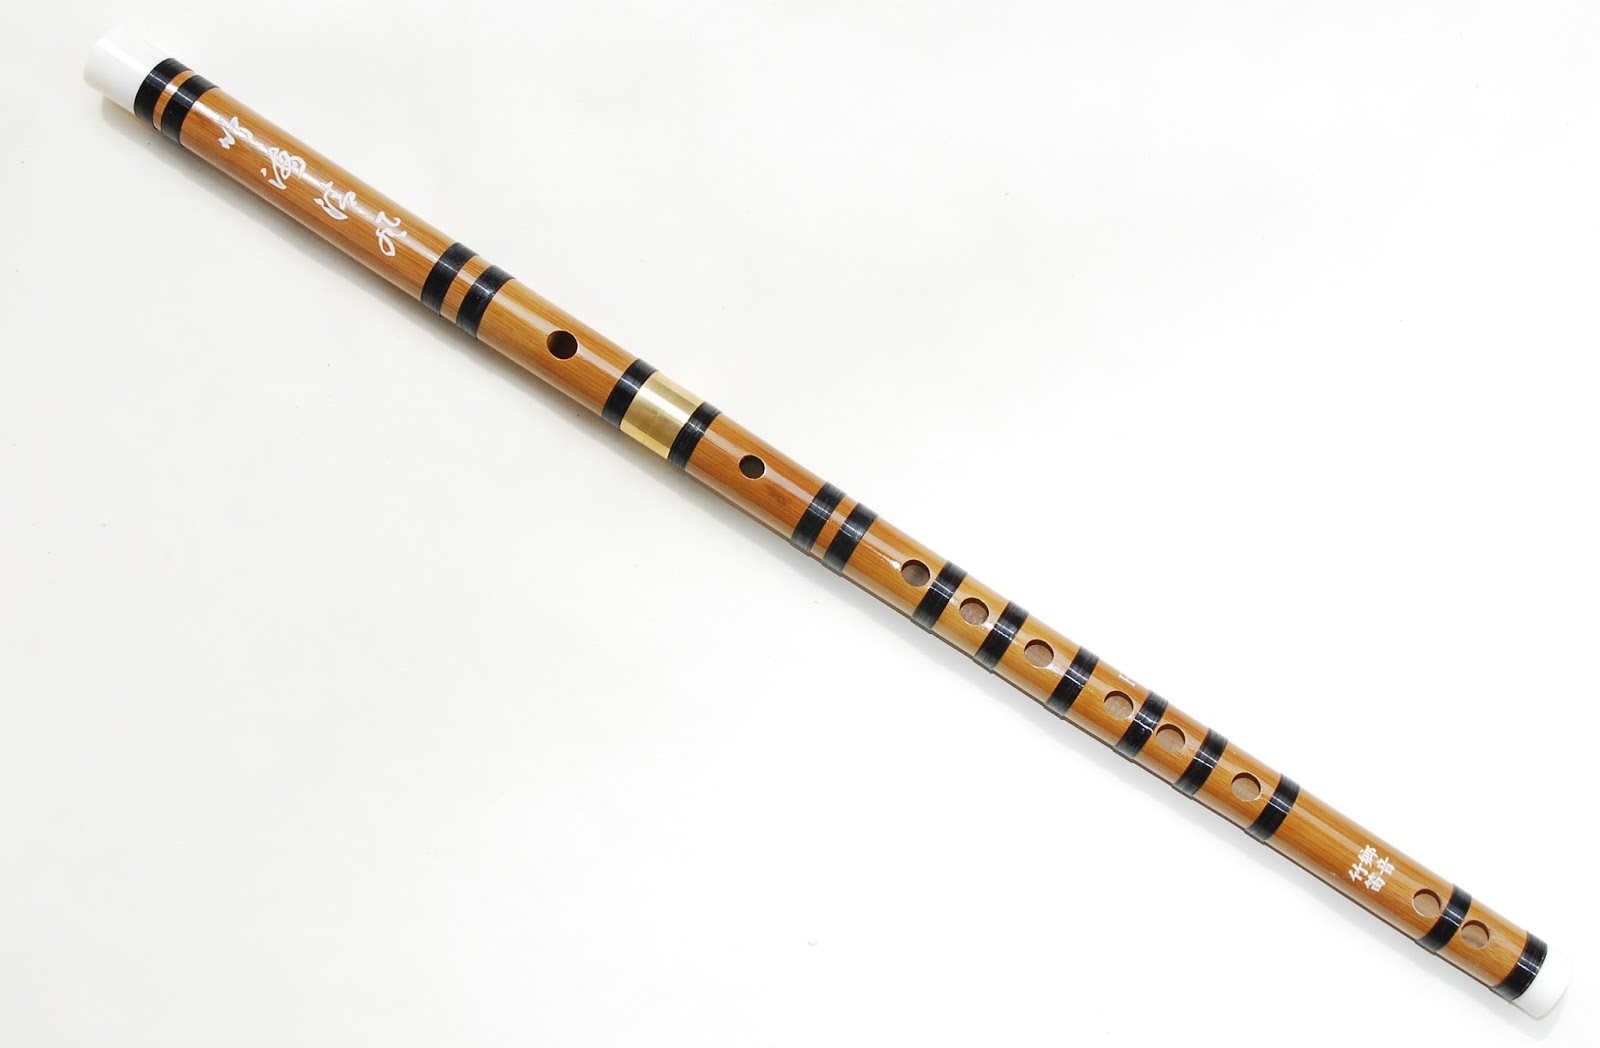 笛子练习曲选《基本练习三》竹笛练习乐谱-笛子曲谱 - 乐器学习网